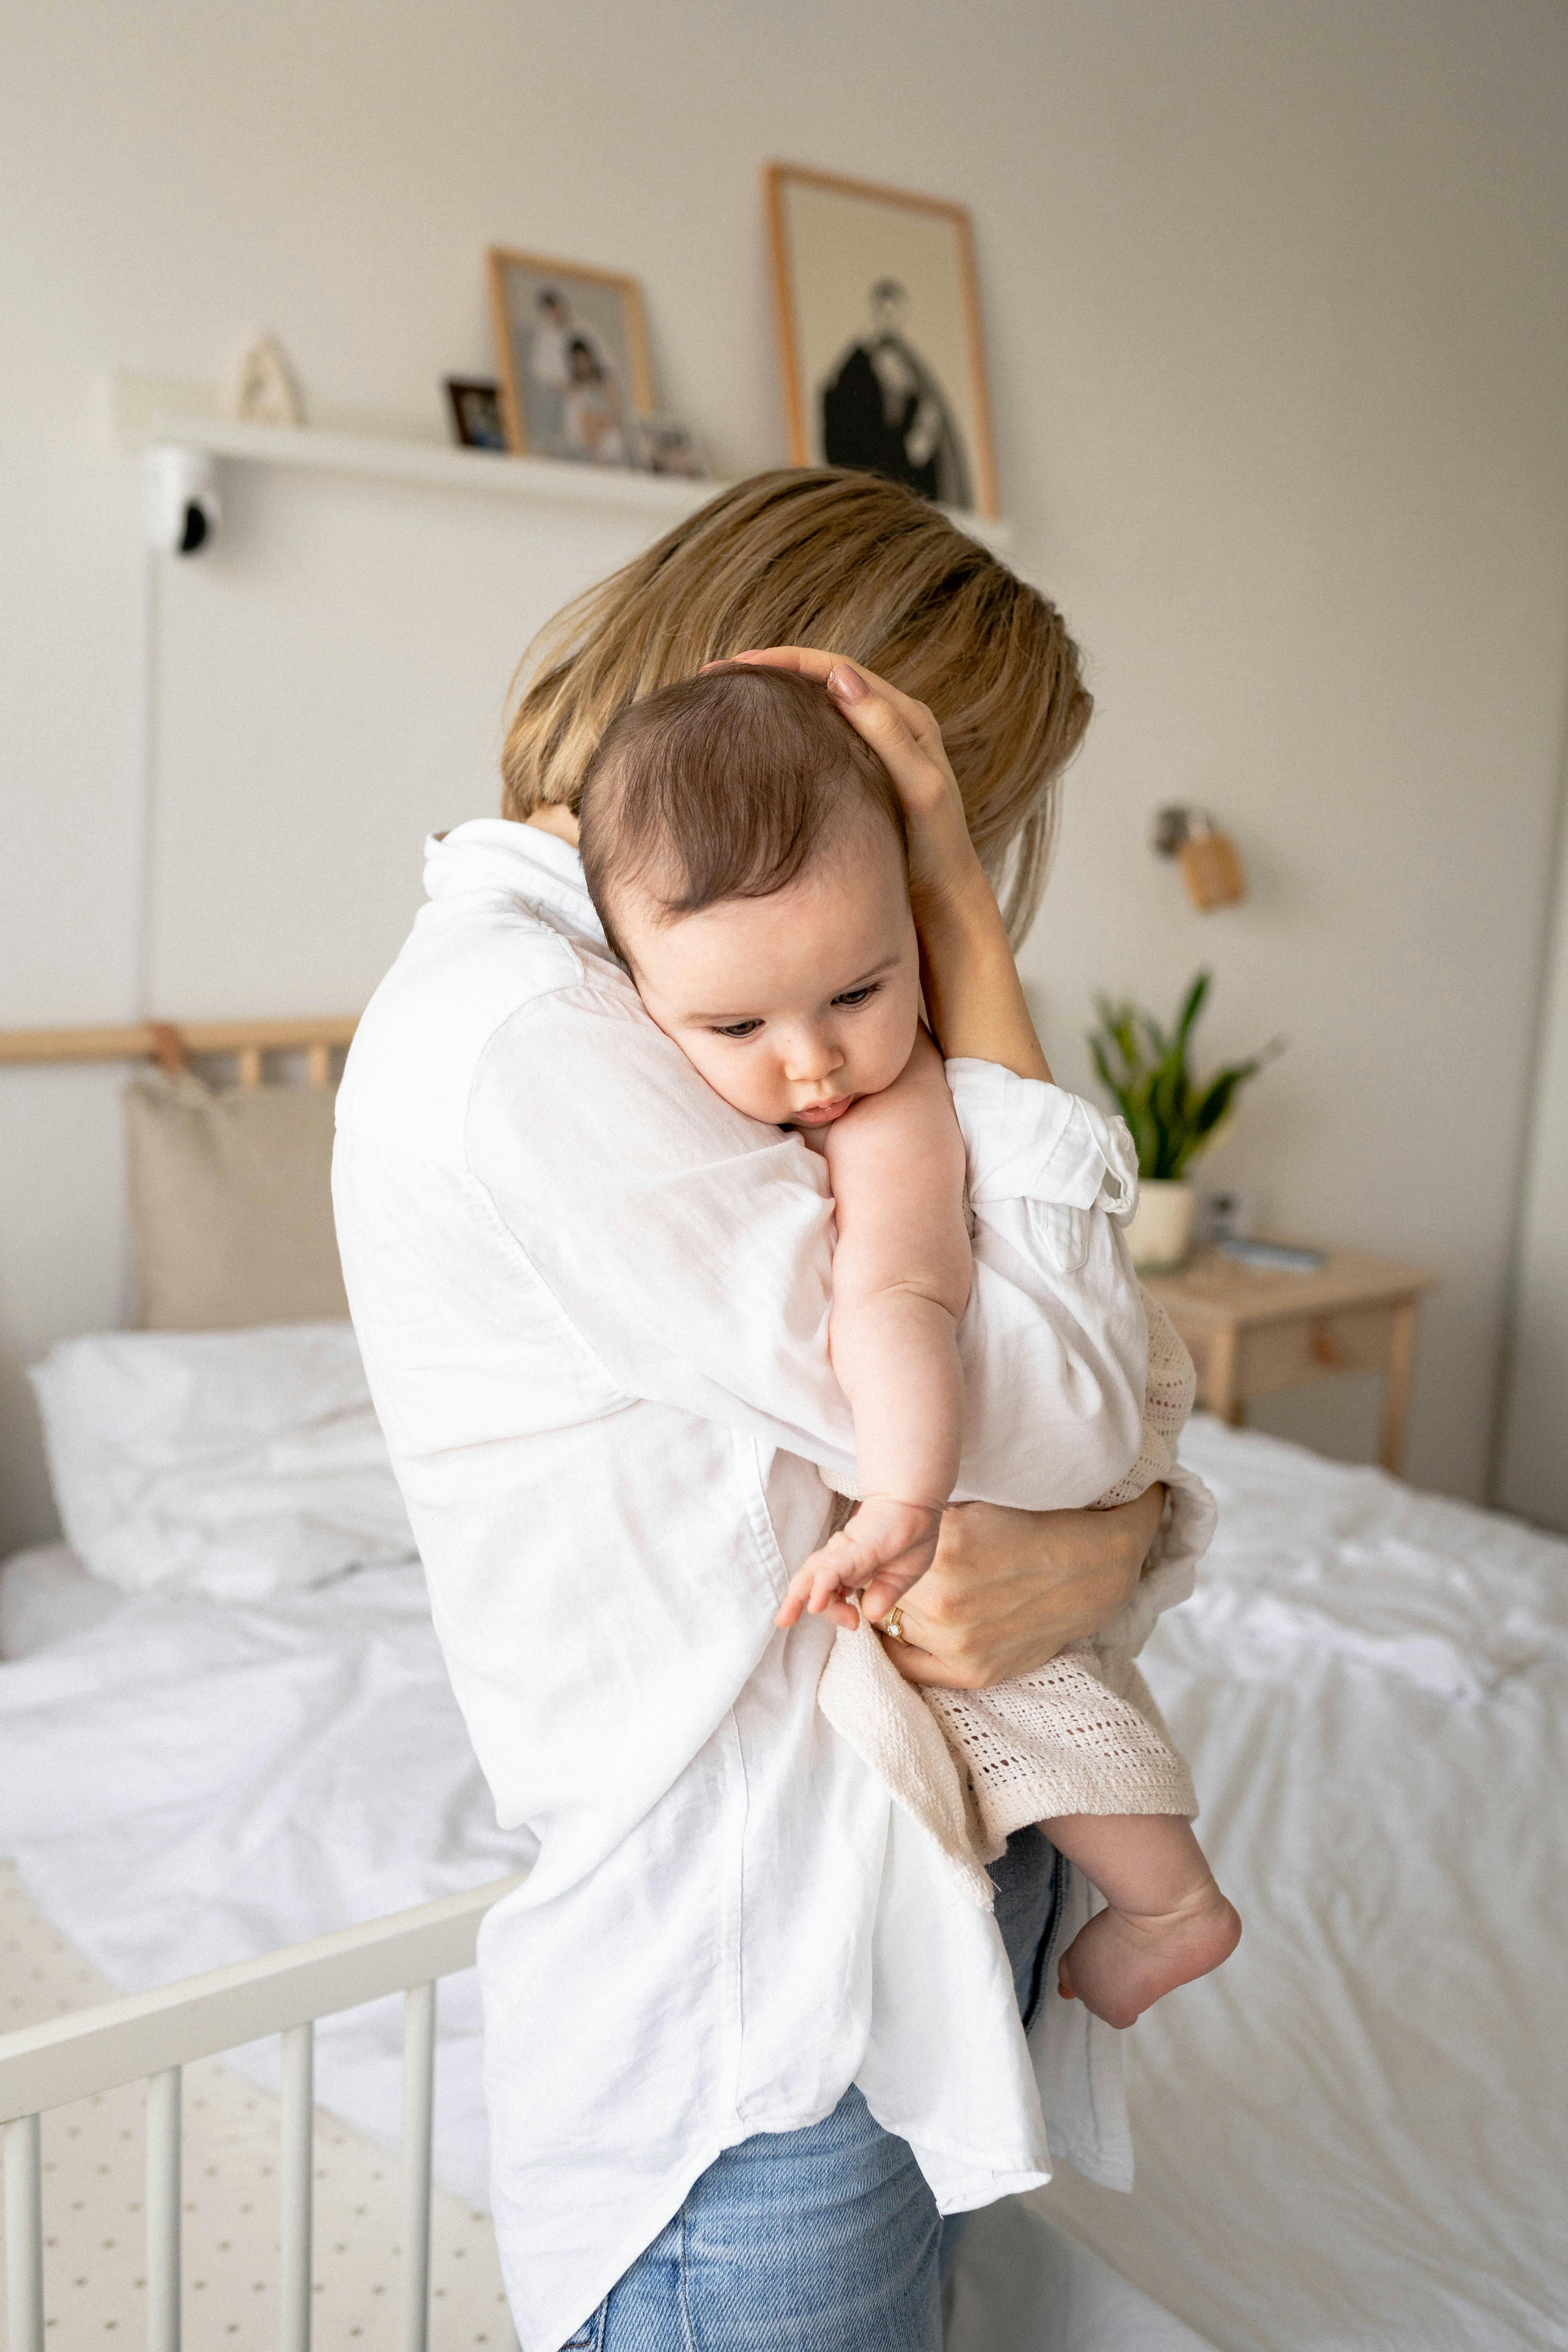 Eine Frau, die ihr Baby umarmt und festhält | Quelle: Pexels